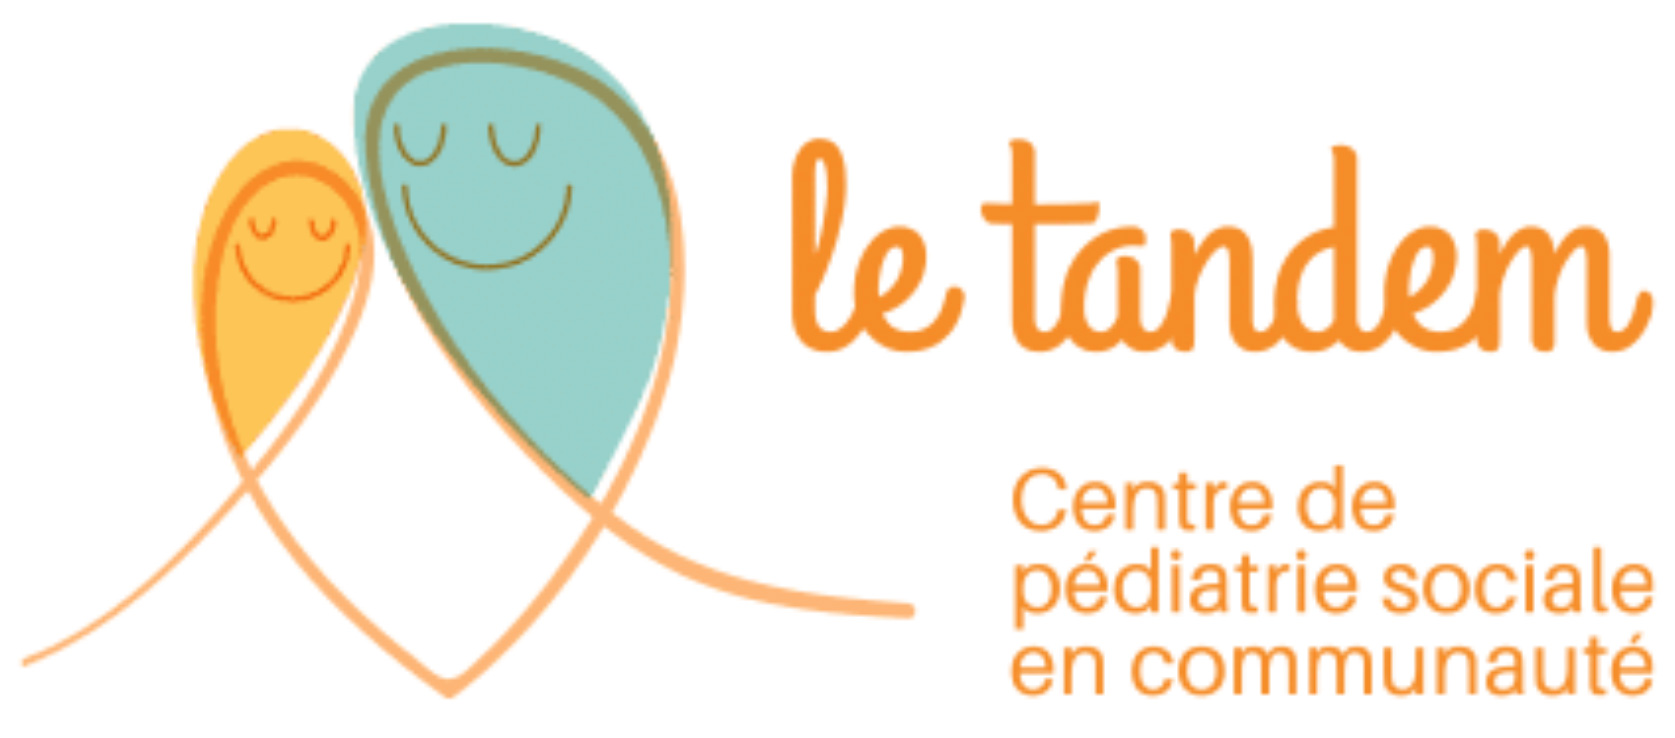 Implications sociales - Le Tandem - Centre de pédiatrie sociale en communauté